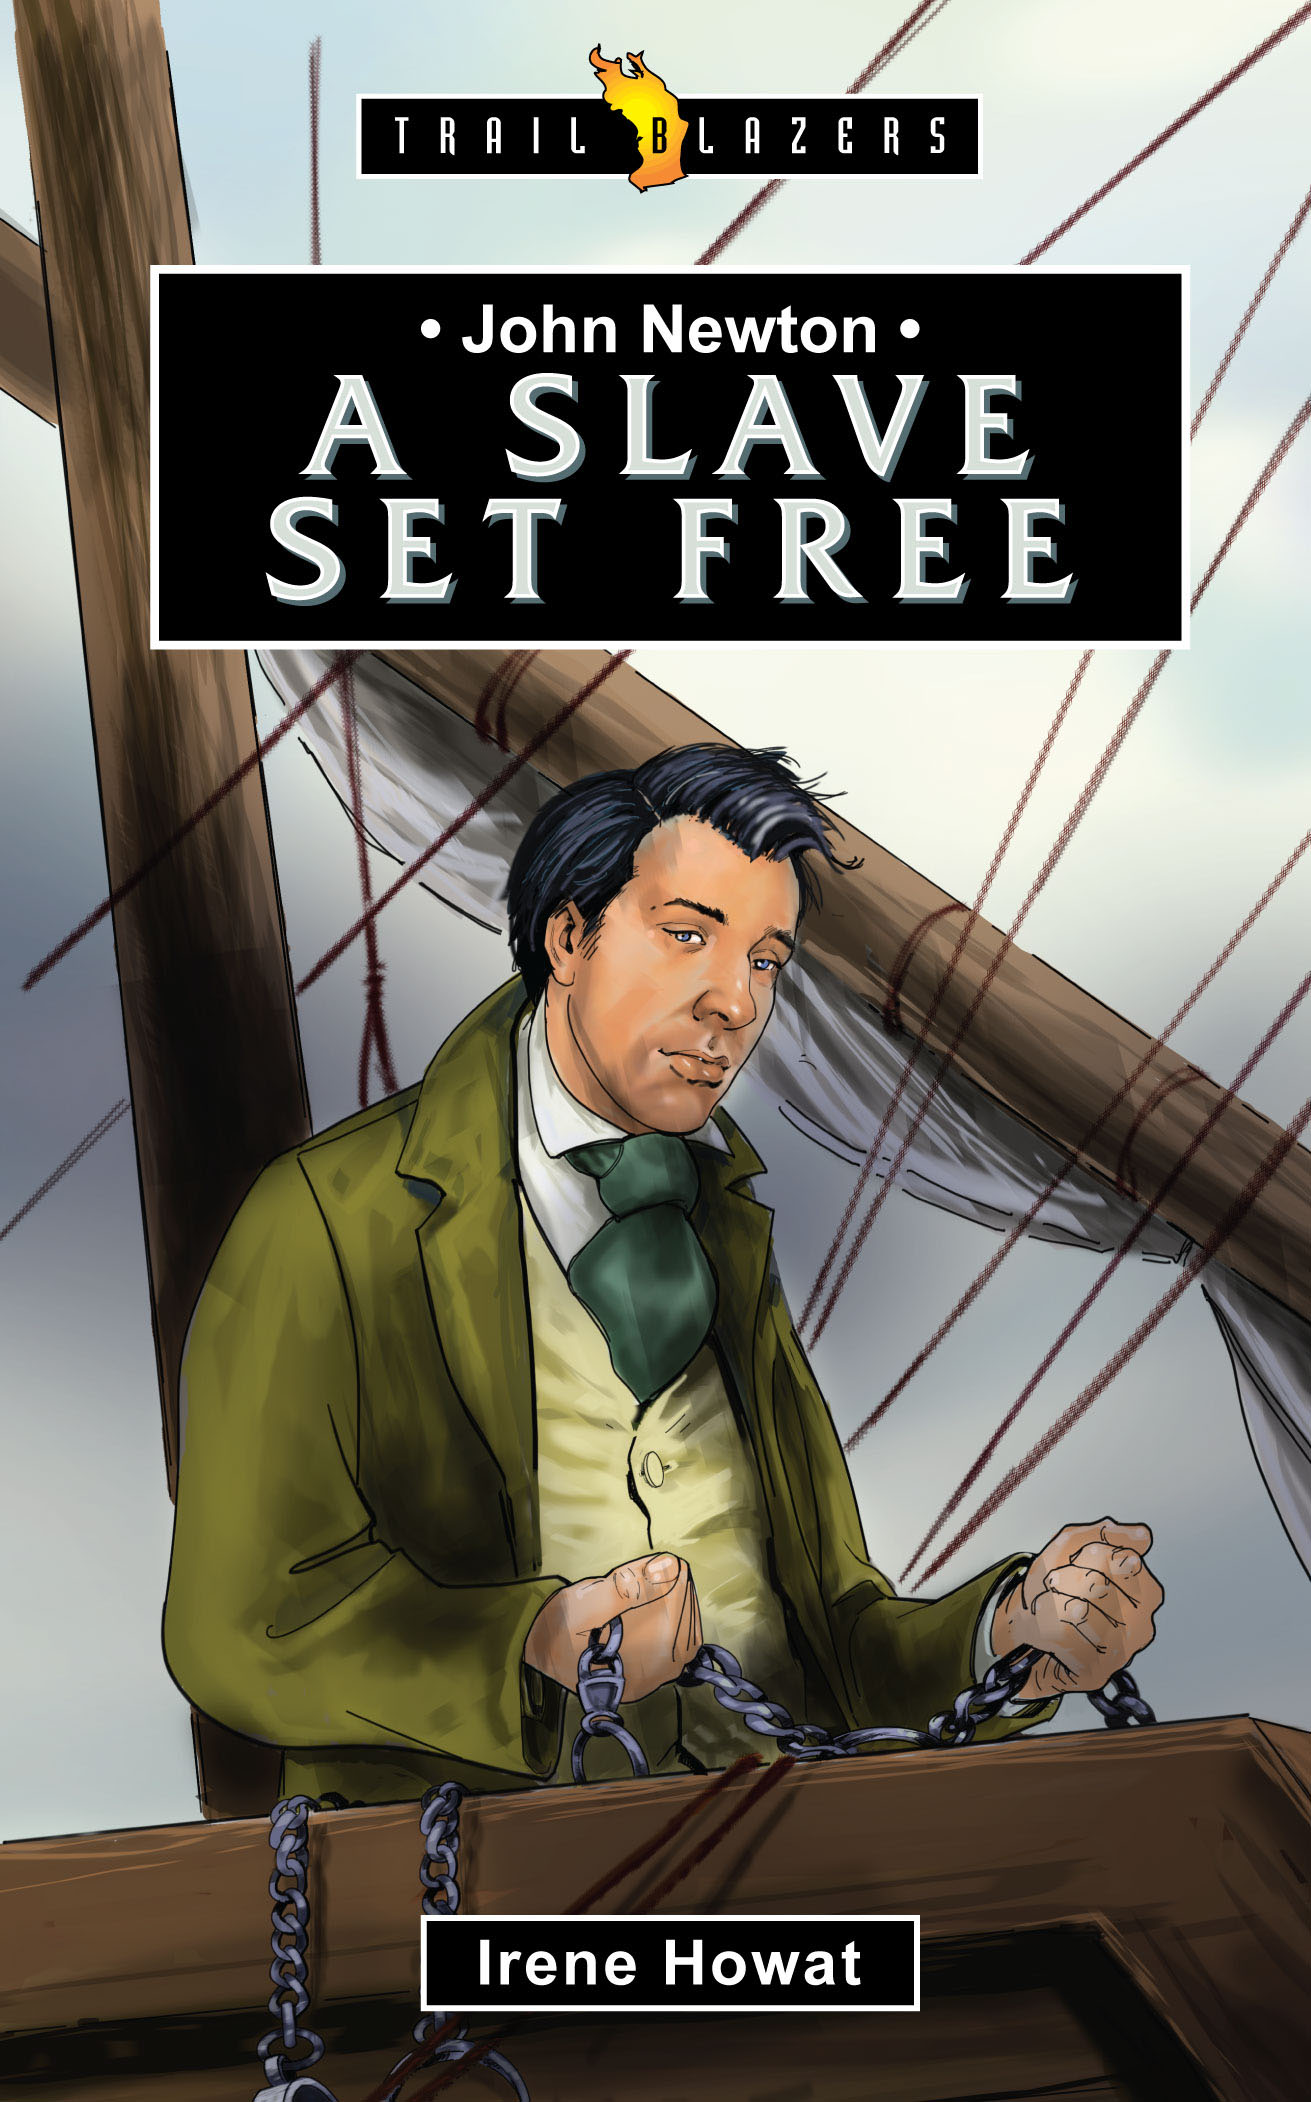 JOHN NEWTON A SLAVE SET FREE